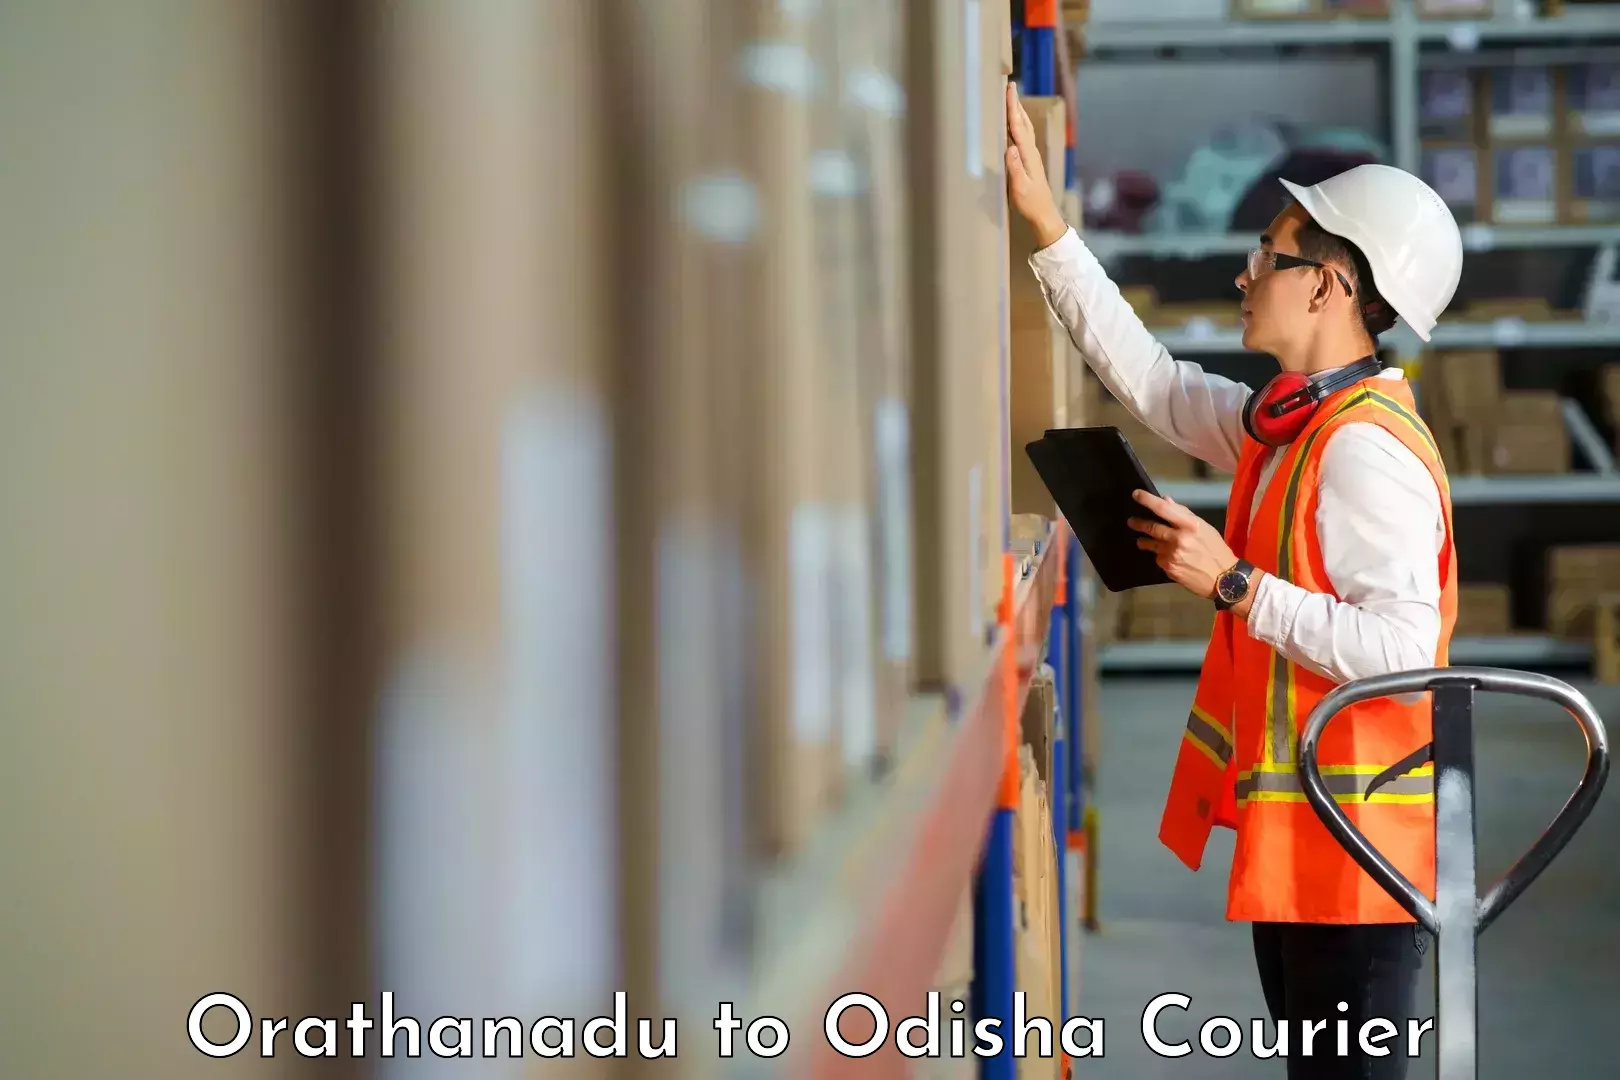 Courier membership in Orathanadu to Pipili